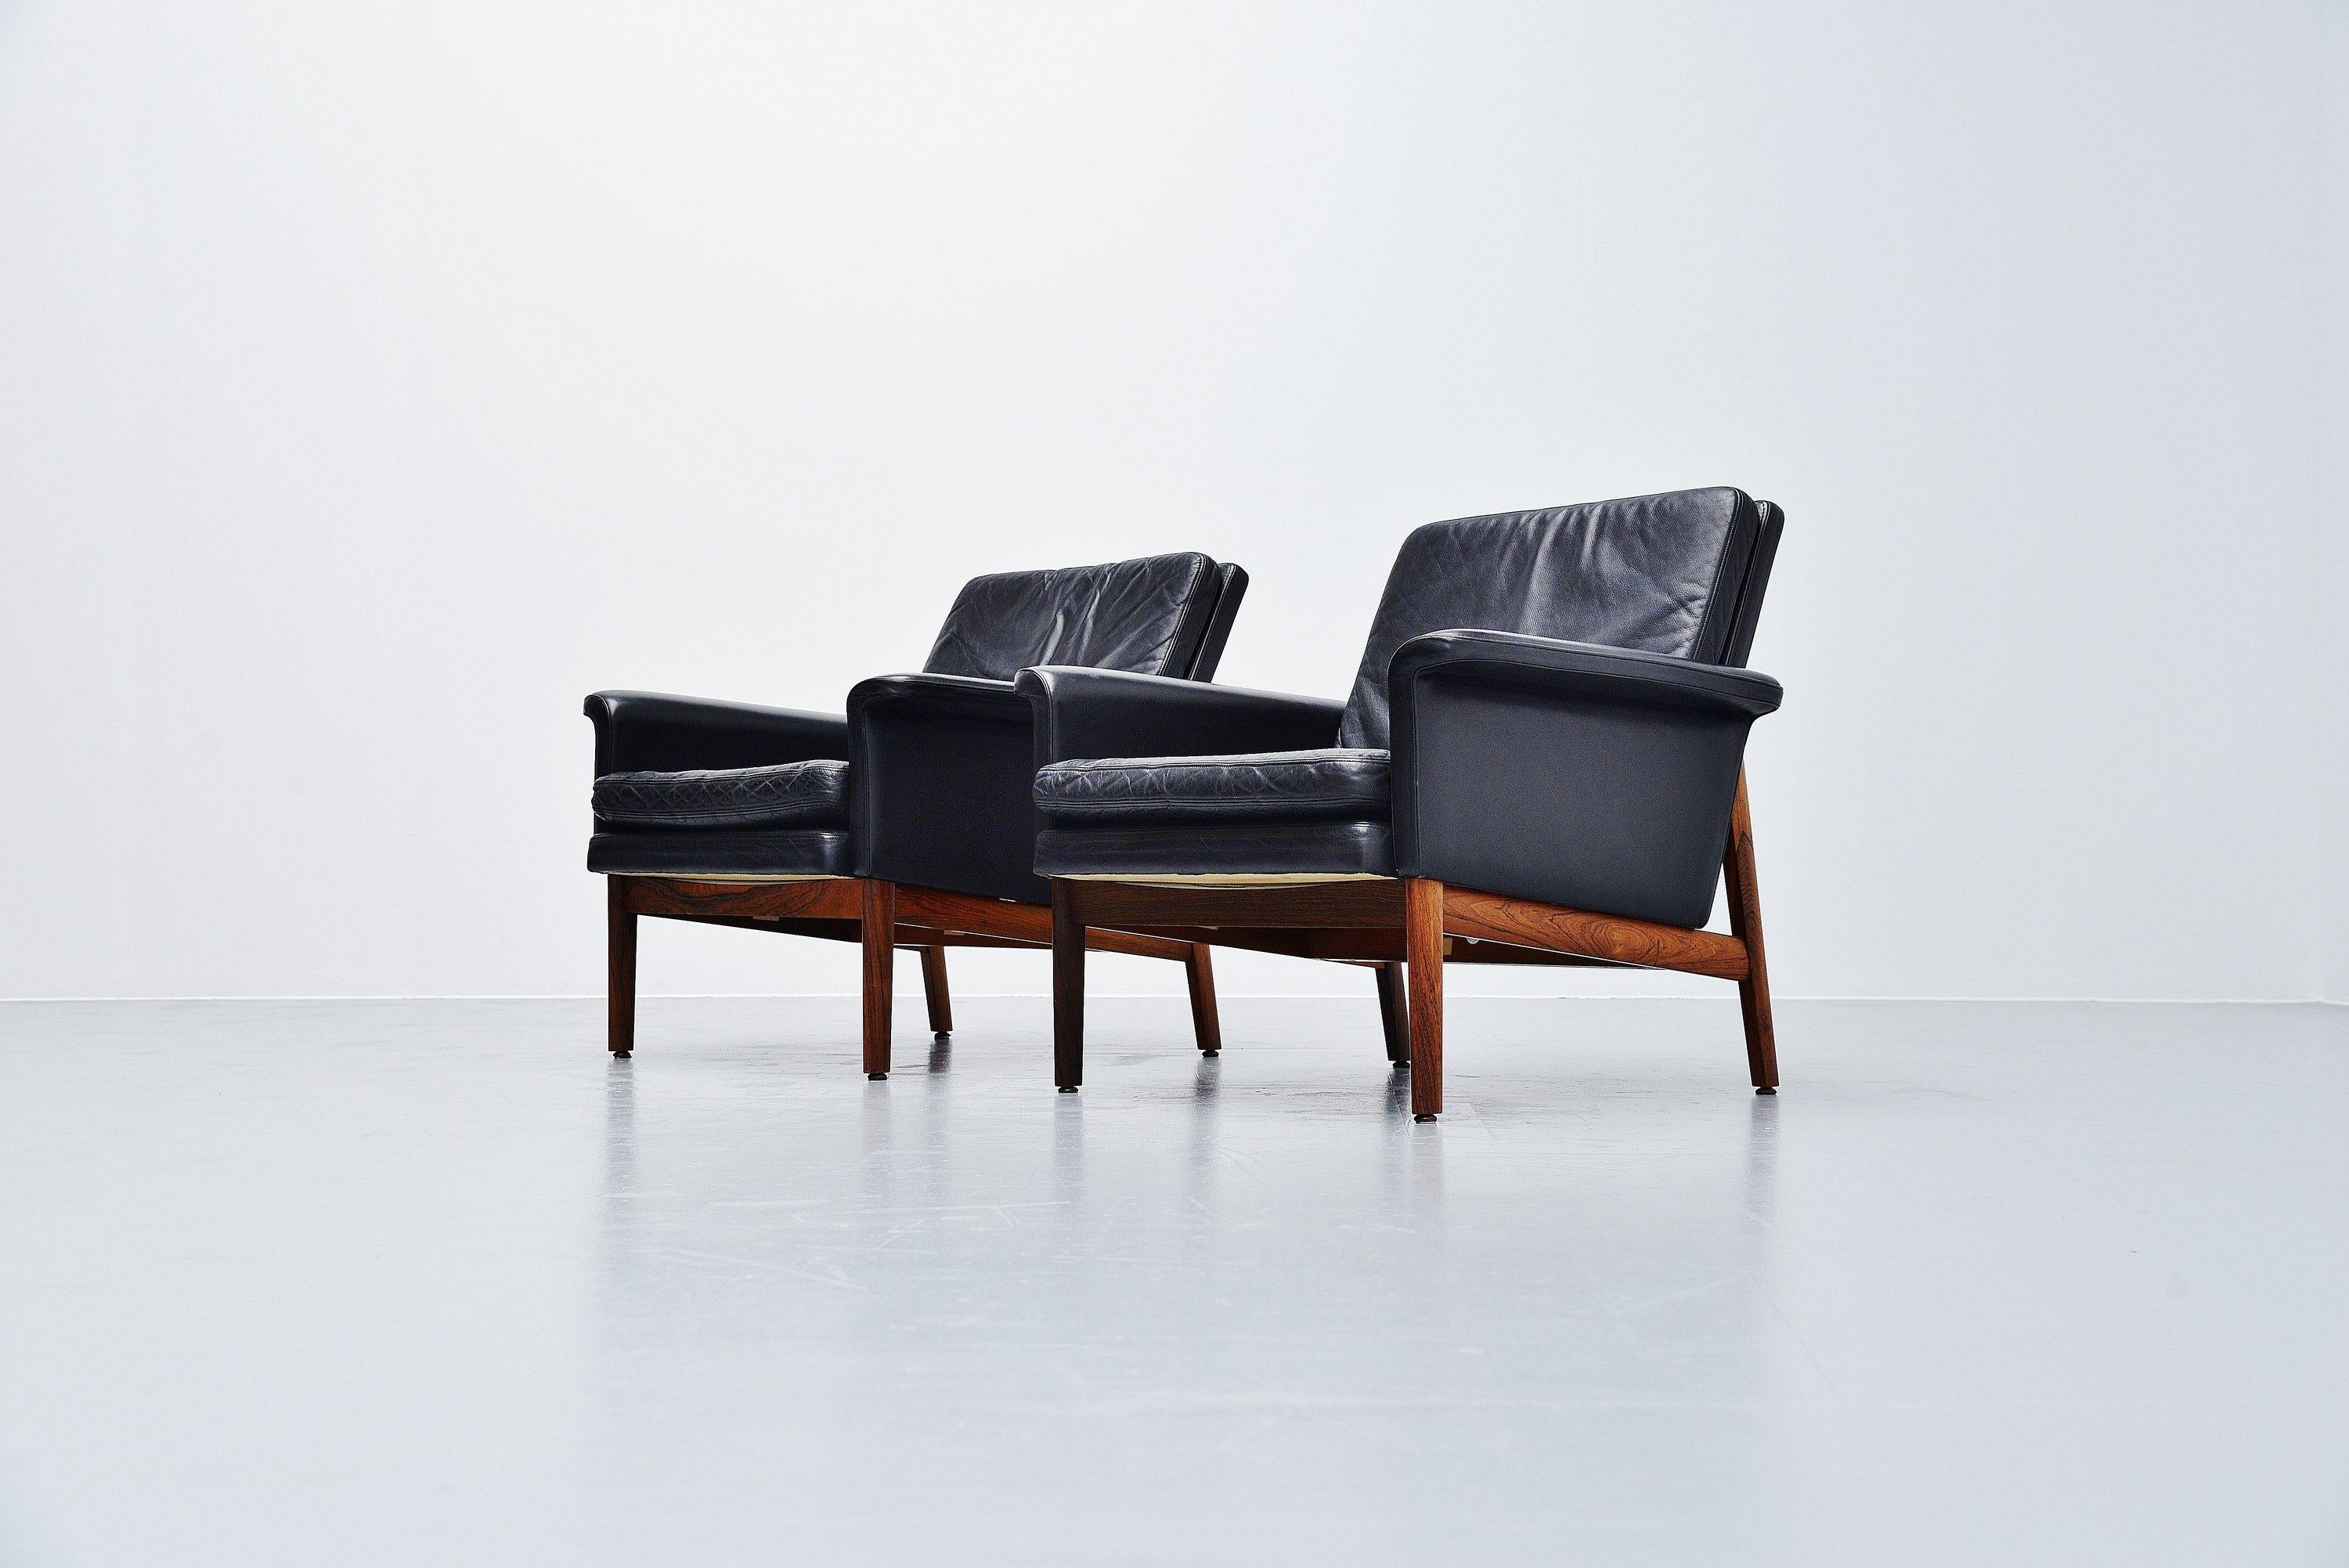 Leather Finn Juhl Jupiter Lounge Chairs France & Son Denmark 1965 Black